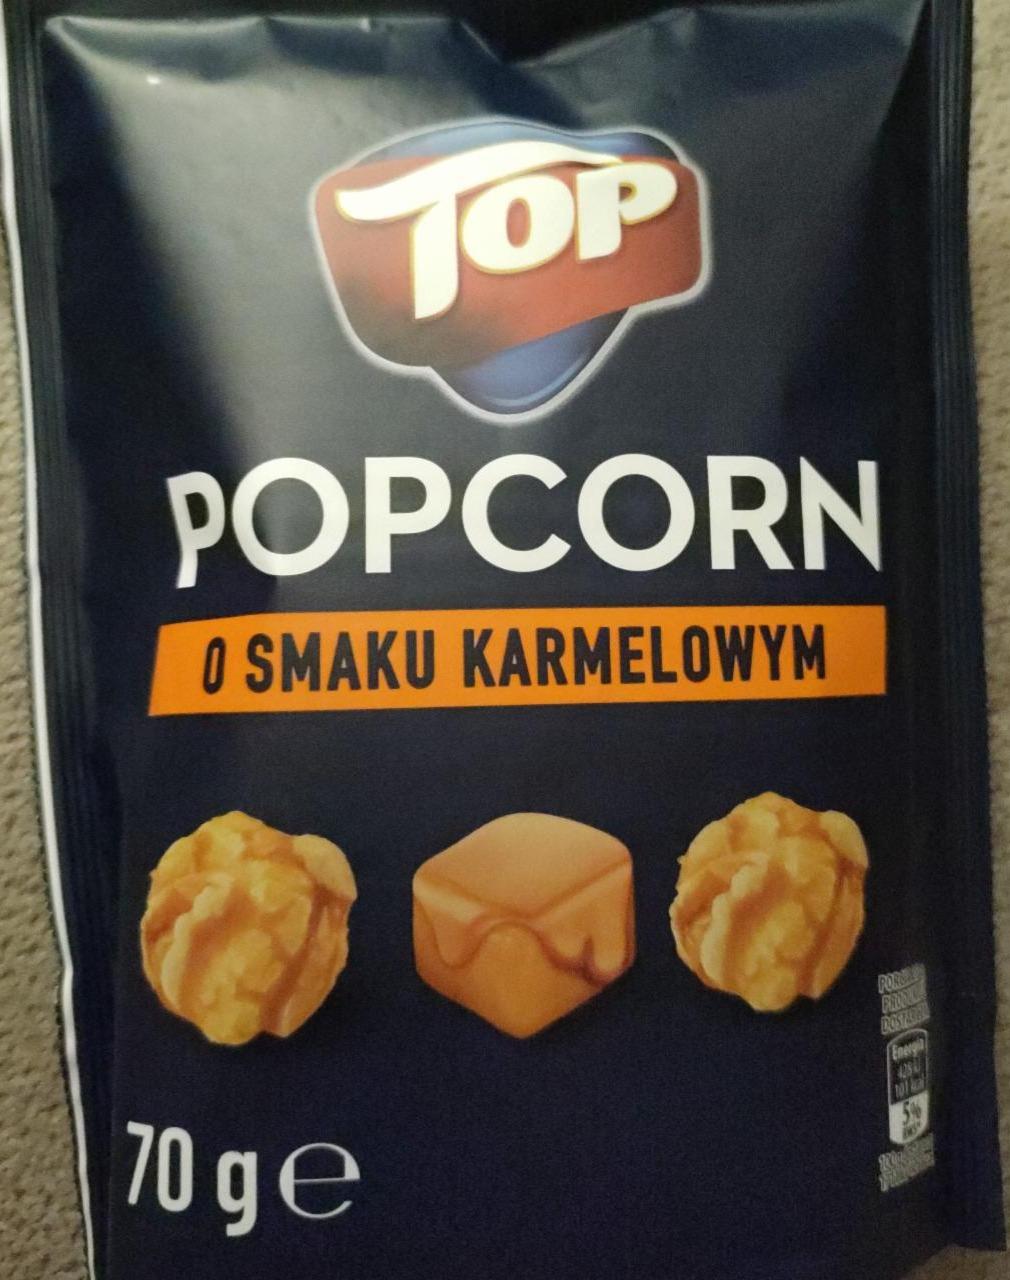 Zdjęcia - Popcorn o smaku karamelowym TOP